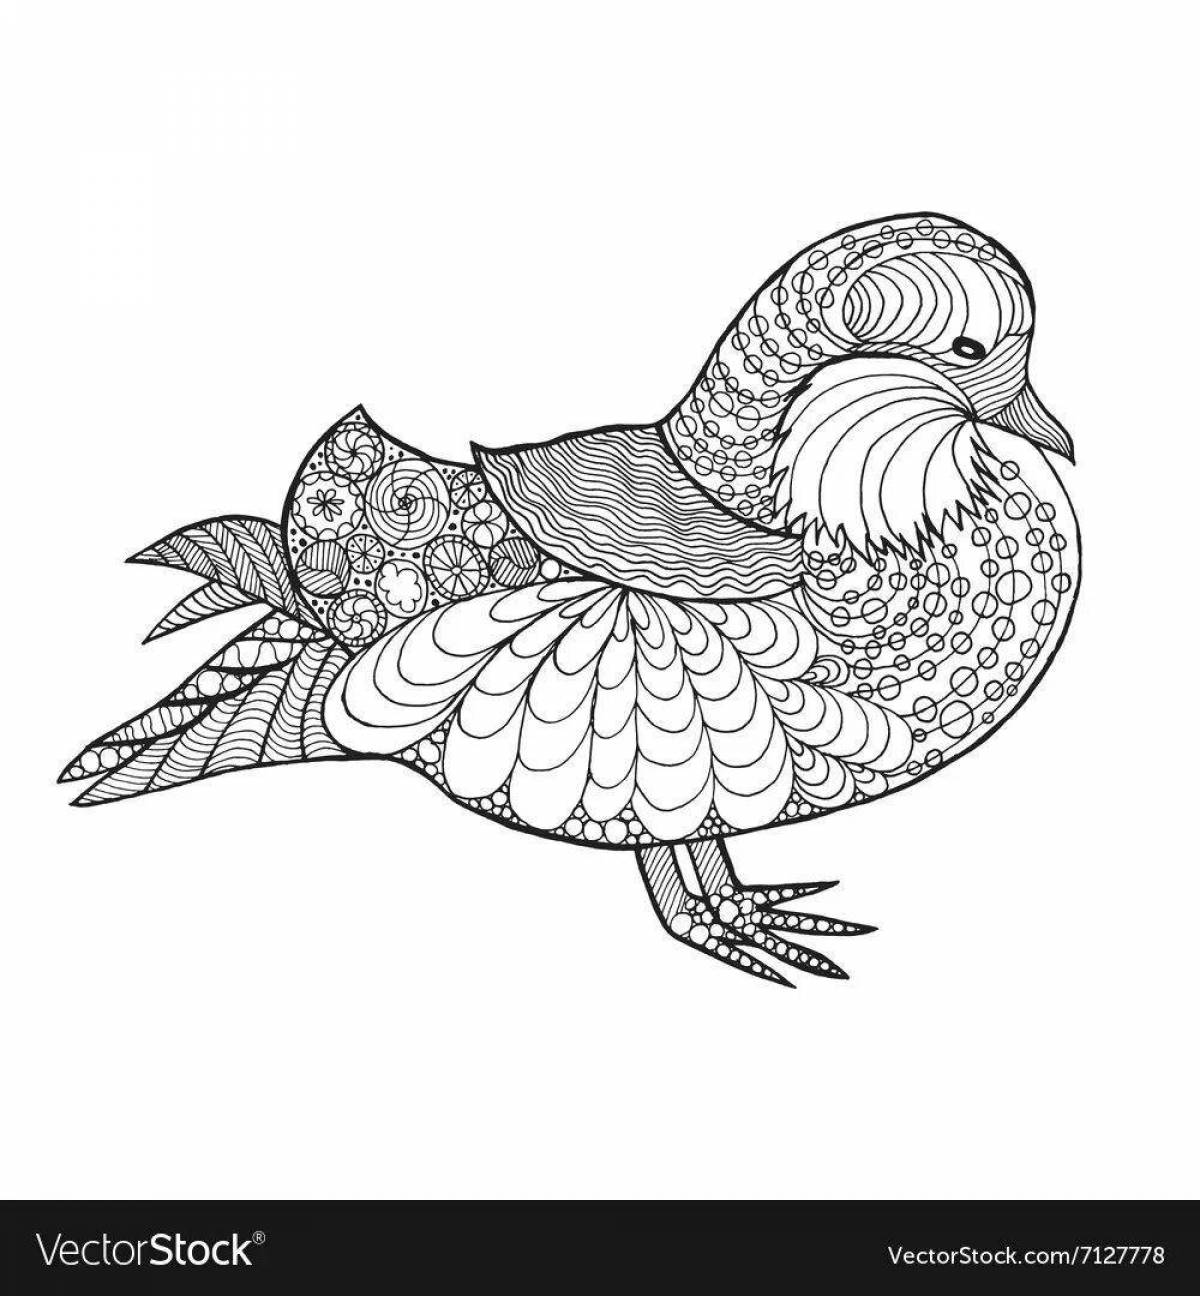 Attractive mandarin bird coloring page